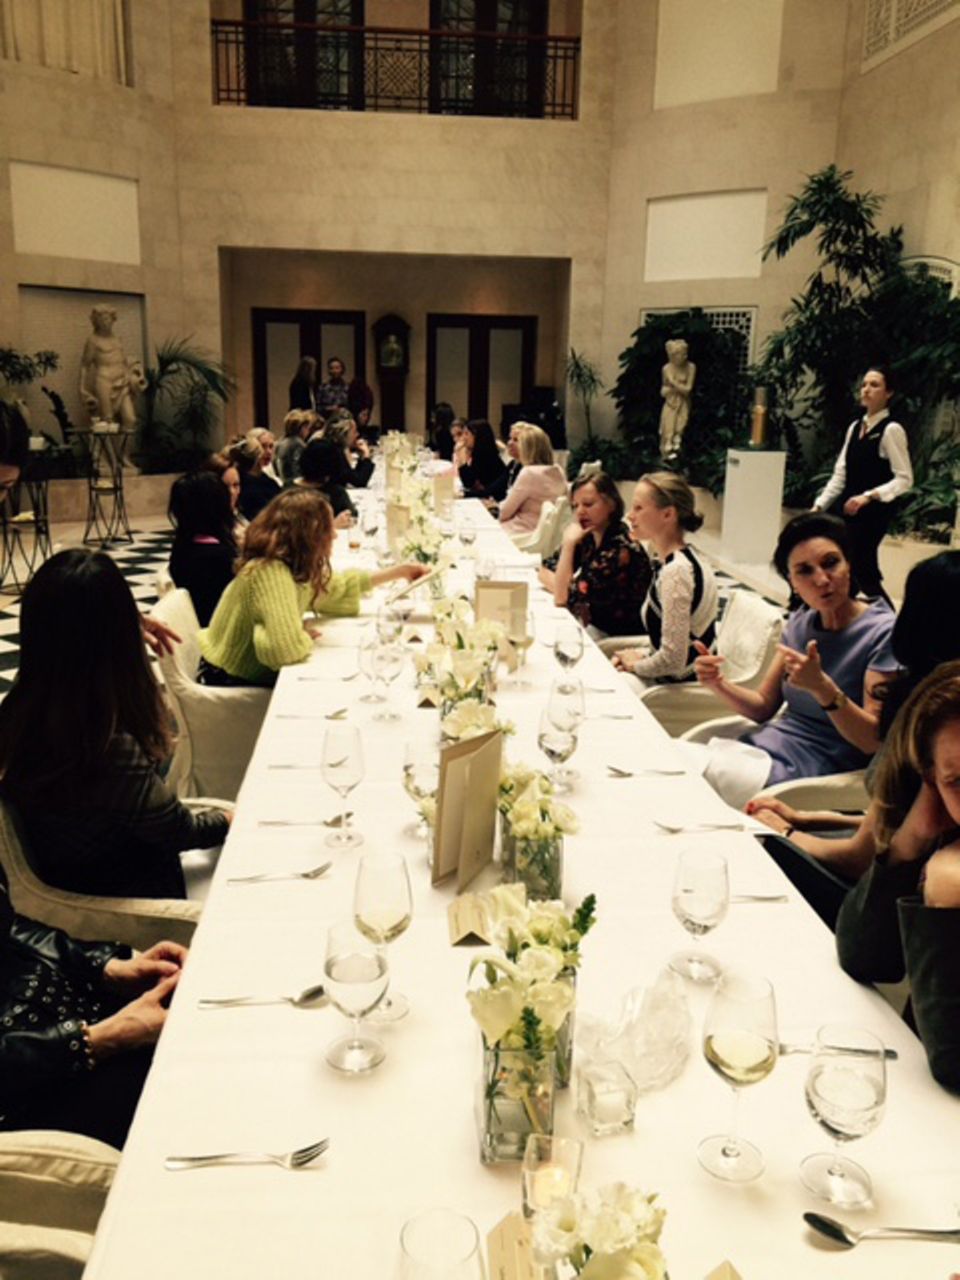 Beim "Ladies Lunch" im Hotel Adlon konnten Networking, spannende Gespräche und fantastisches Essen miteinander verbunden werden.